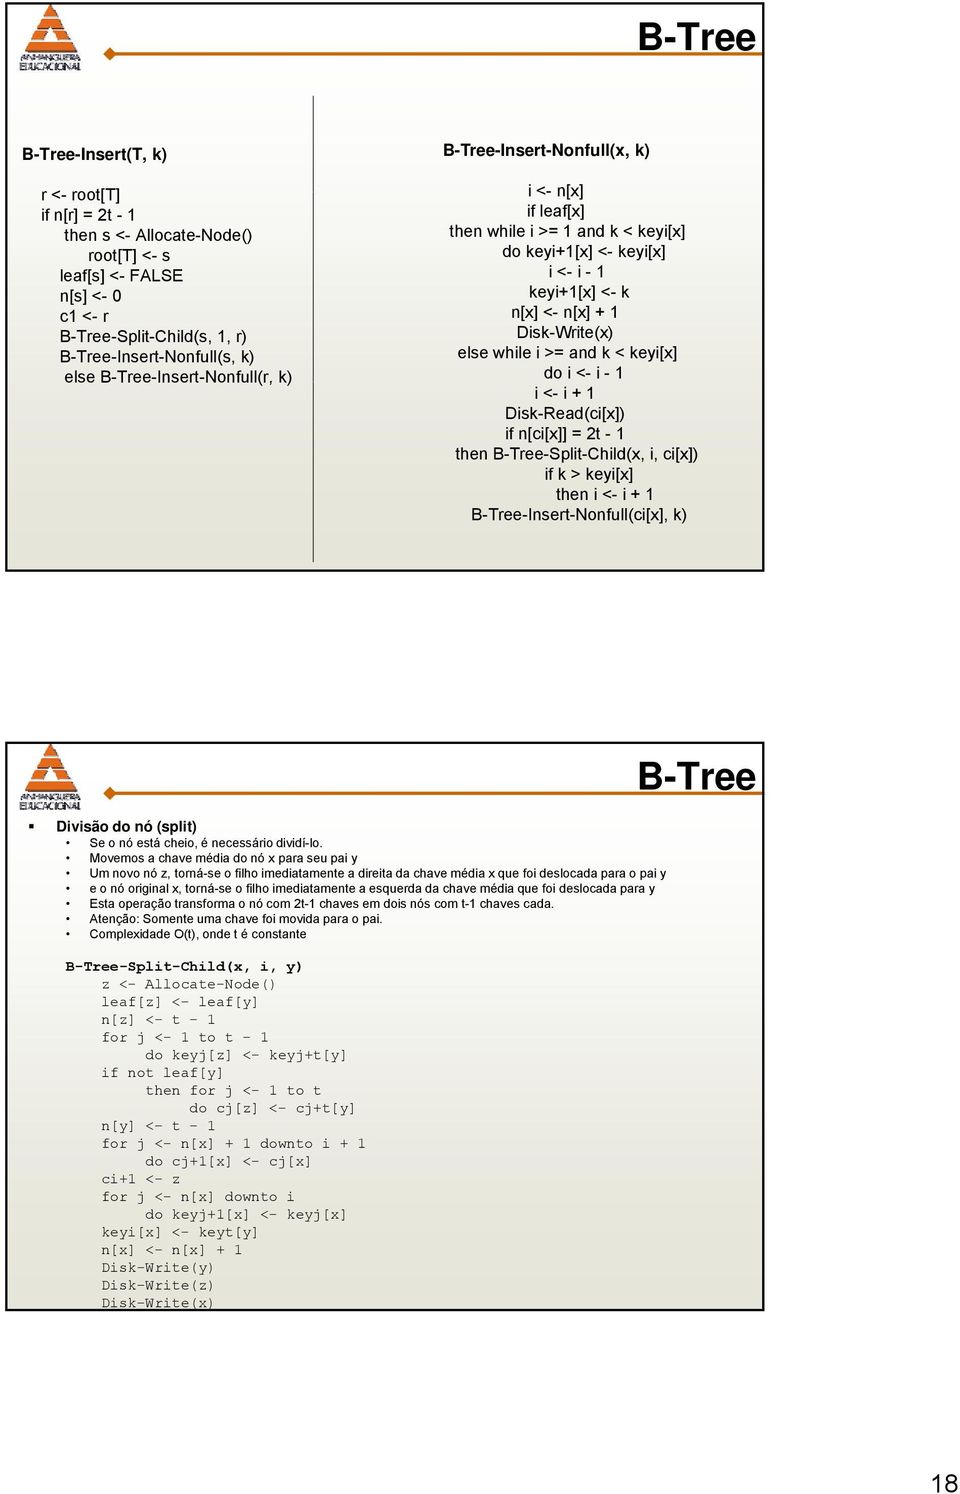 while i >= and k < keyi[x] do i <- i - 1 i <- i + 1 Disk-Read(ci[x]) if n[ci[x]] = 2t - 1 then B-Tree-Split-Child(x, i, ci[x]) if k > keyi[x] then i <- i + 1 B-Tree-Insert-Nonfull(ci[x], k) Divisão